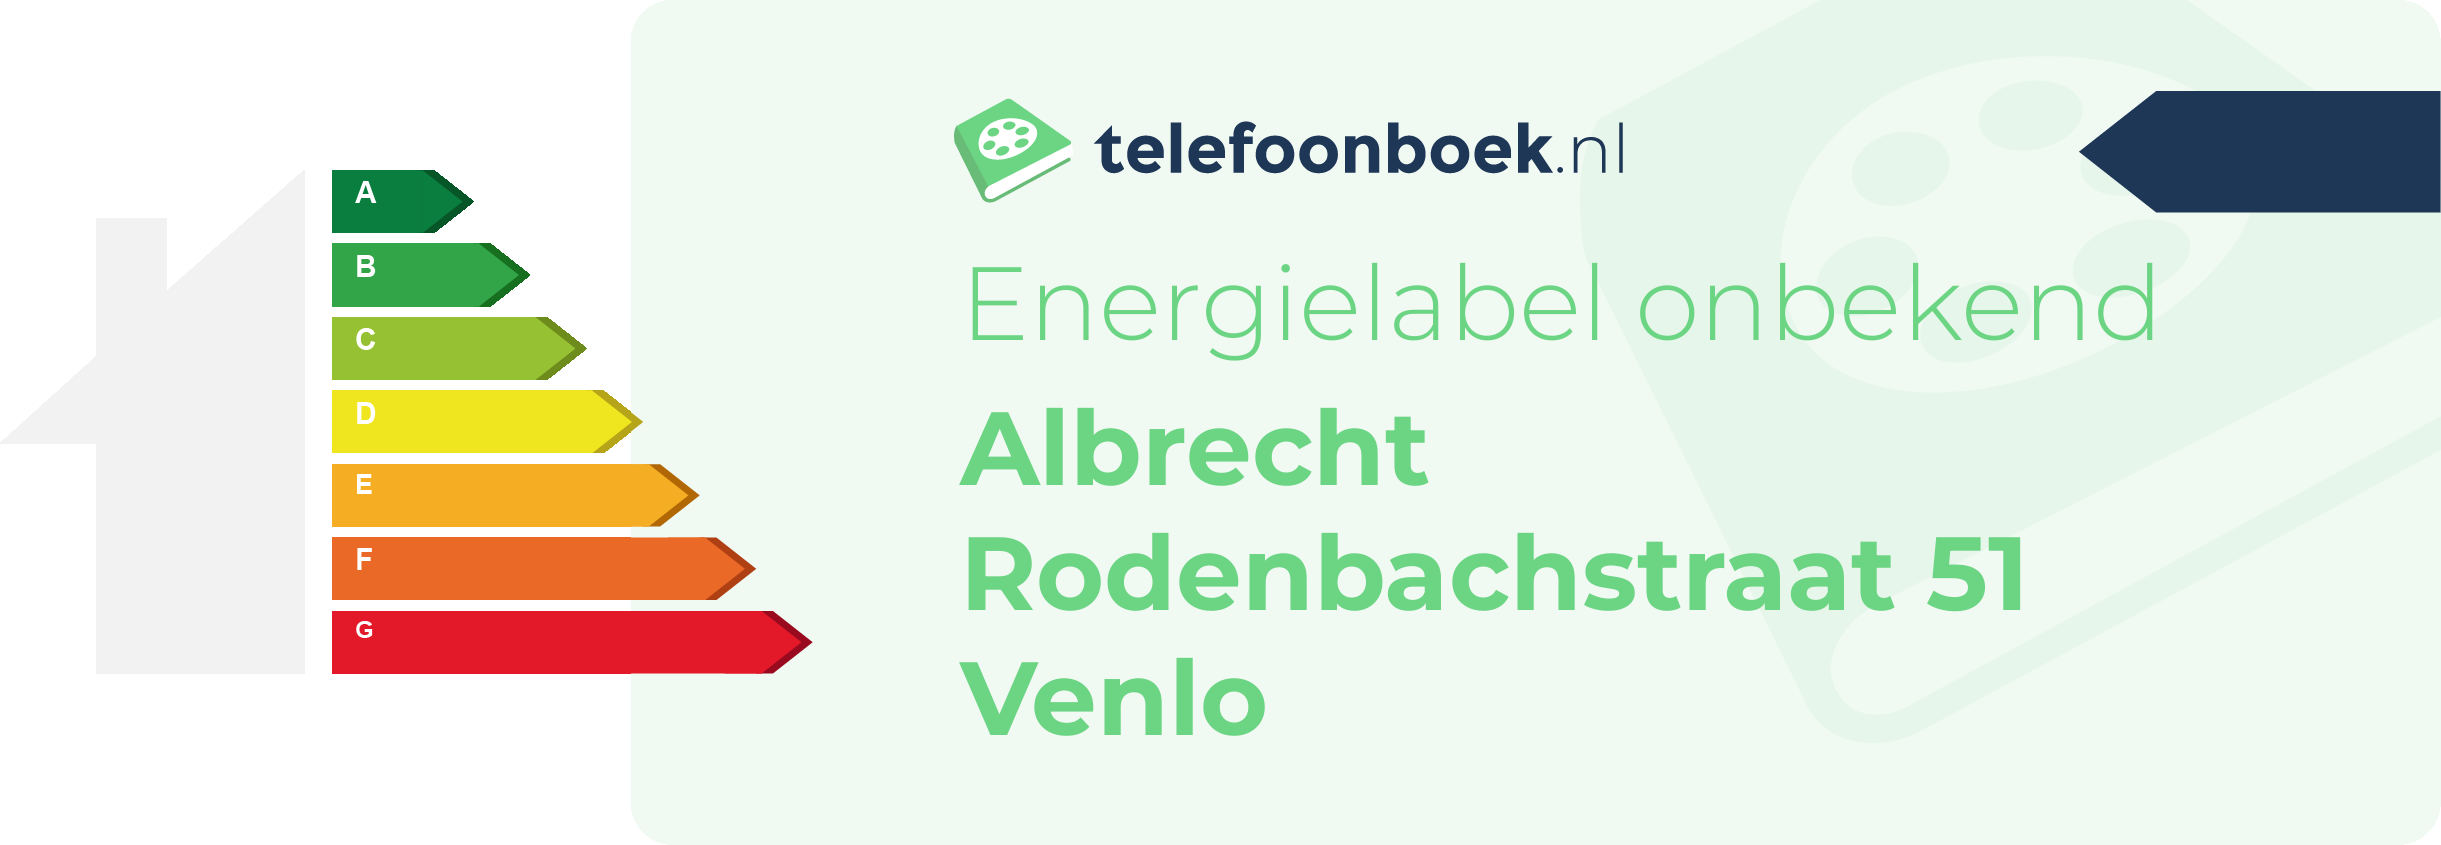 Energielabel Albrecht Rodenbachstraat 51 Venlo